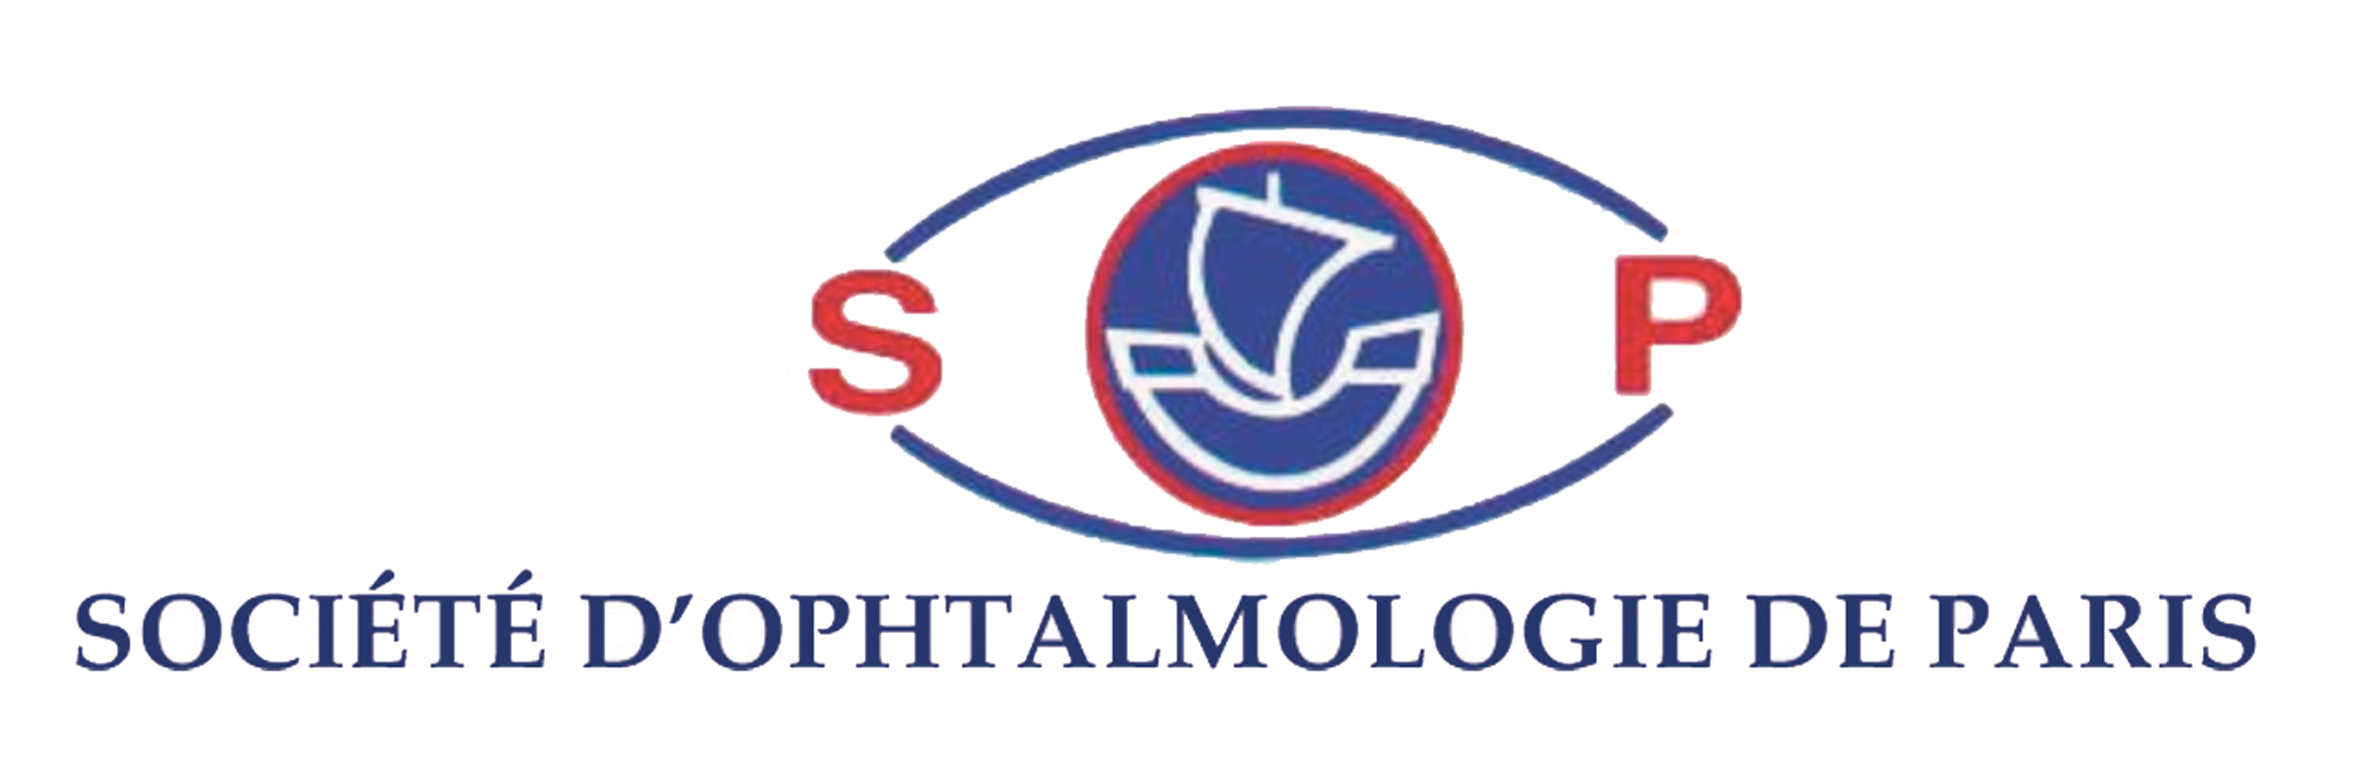 Réunion Plénière des Sociétés d'Ophtalmologie de Paris (SOP) 2020